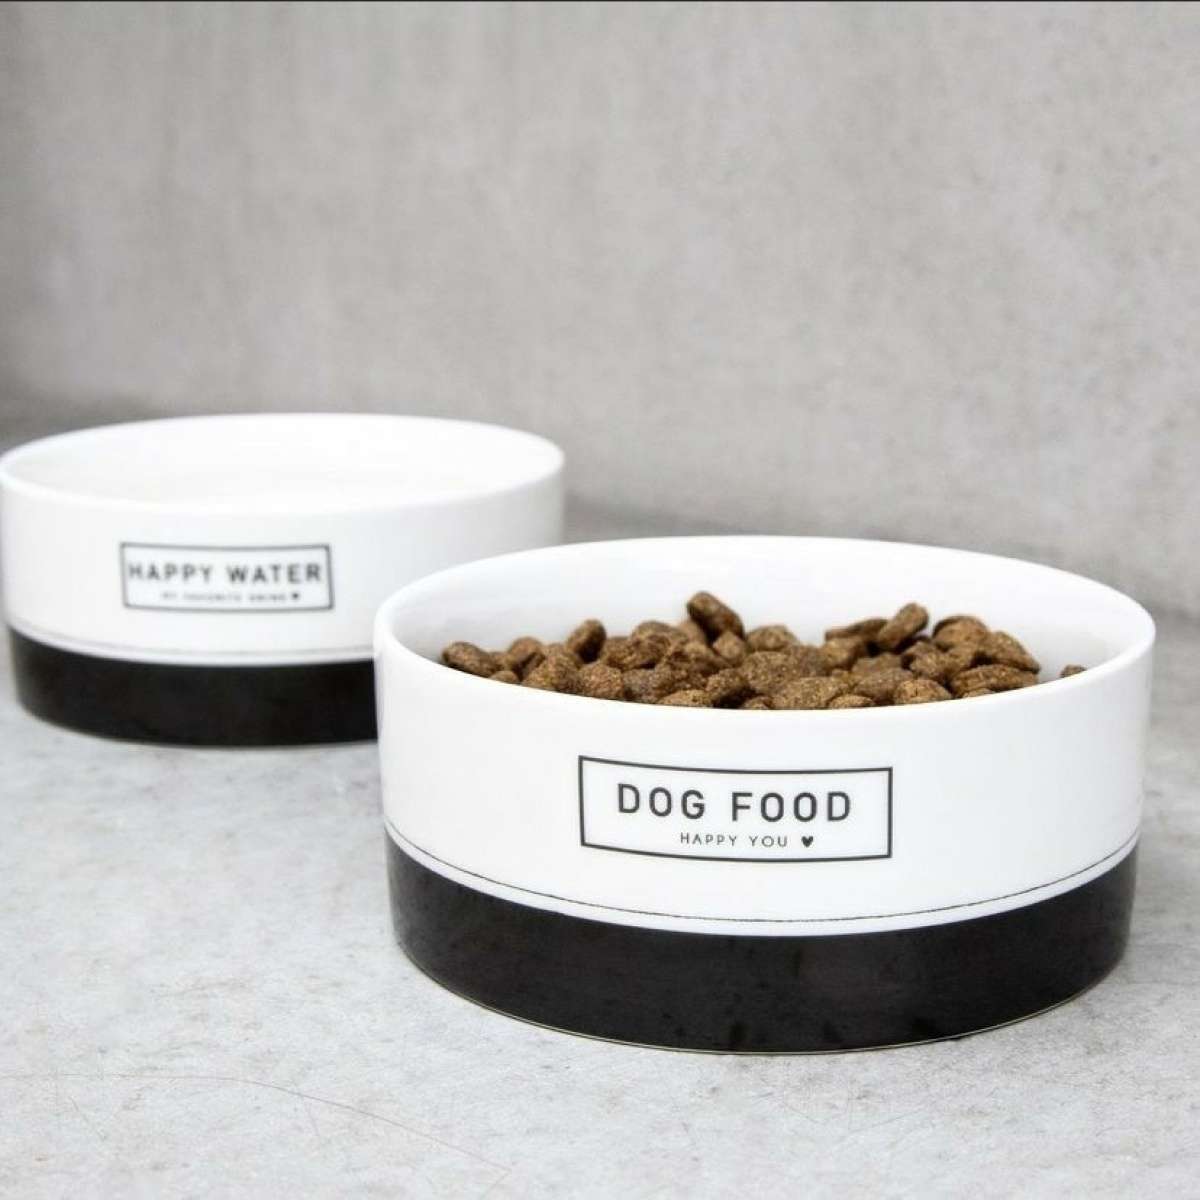 Immagine del prodotto Set 2 Ciotole Cibo e Acqua per Cani Dog Food & Happy Water | Bastion Collections